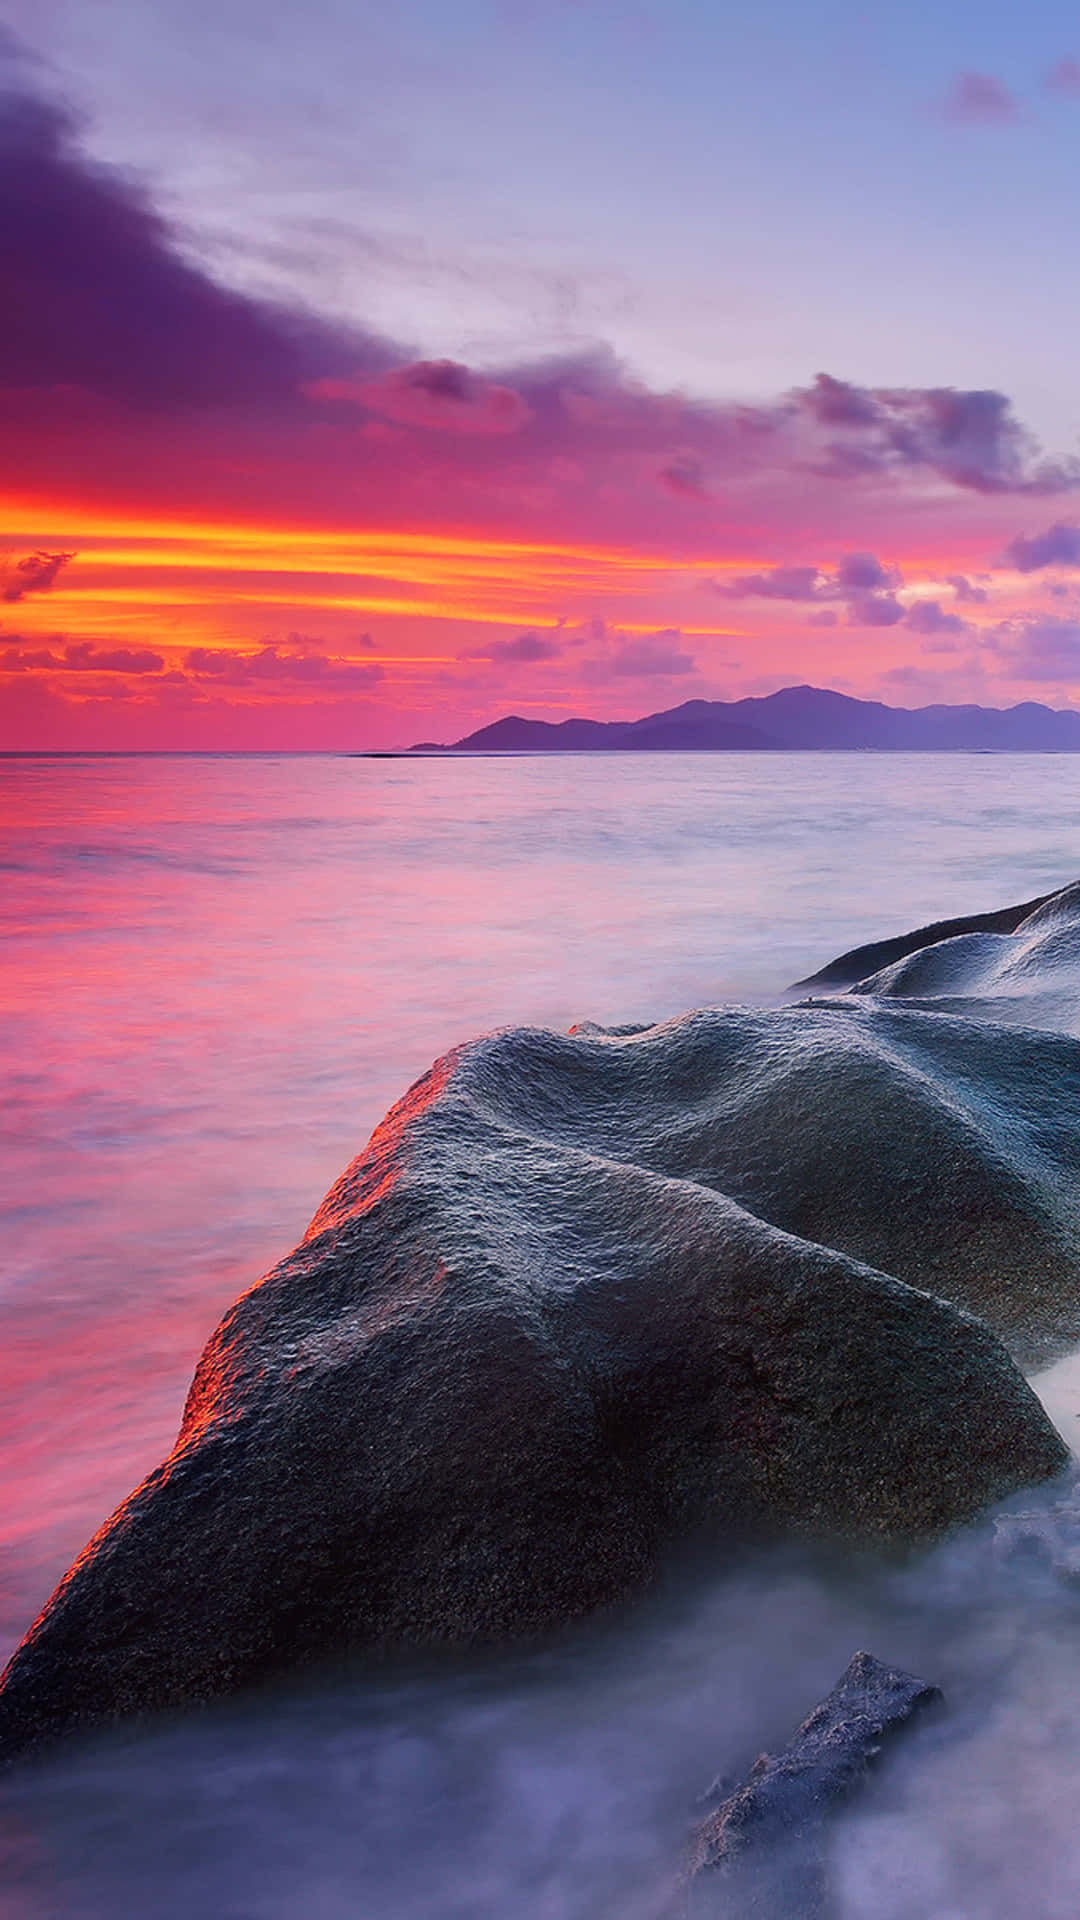 En solnedgang over en strand med sten og vand skyllet langs kysten Wallpaper